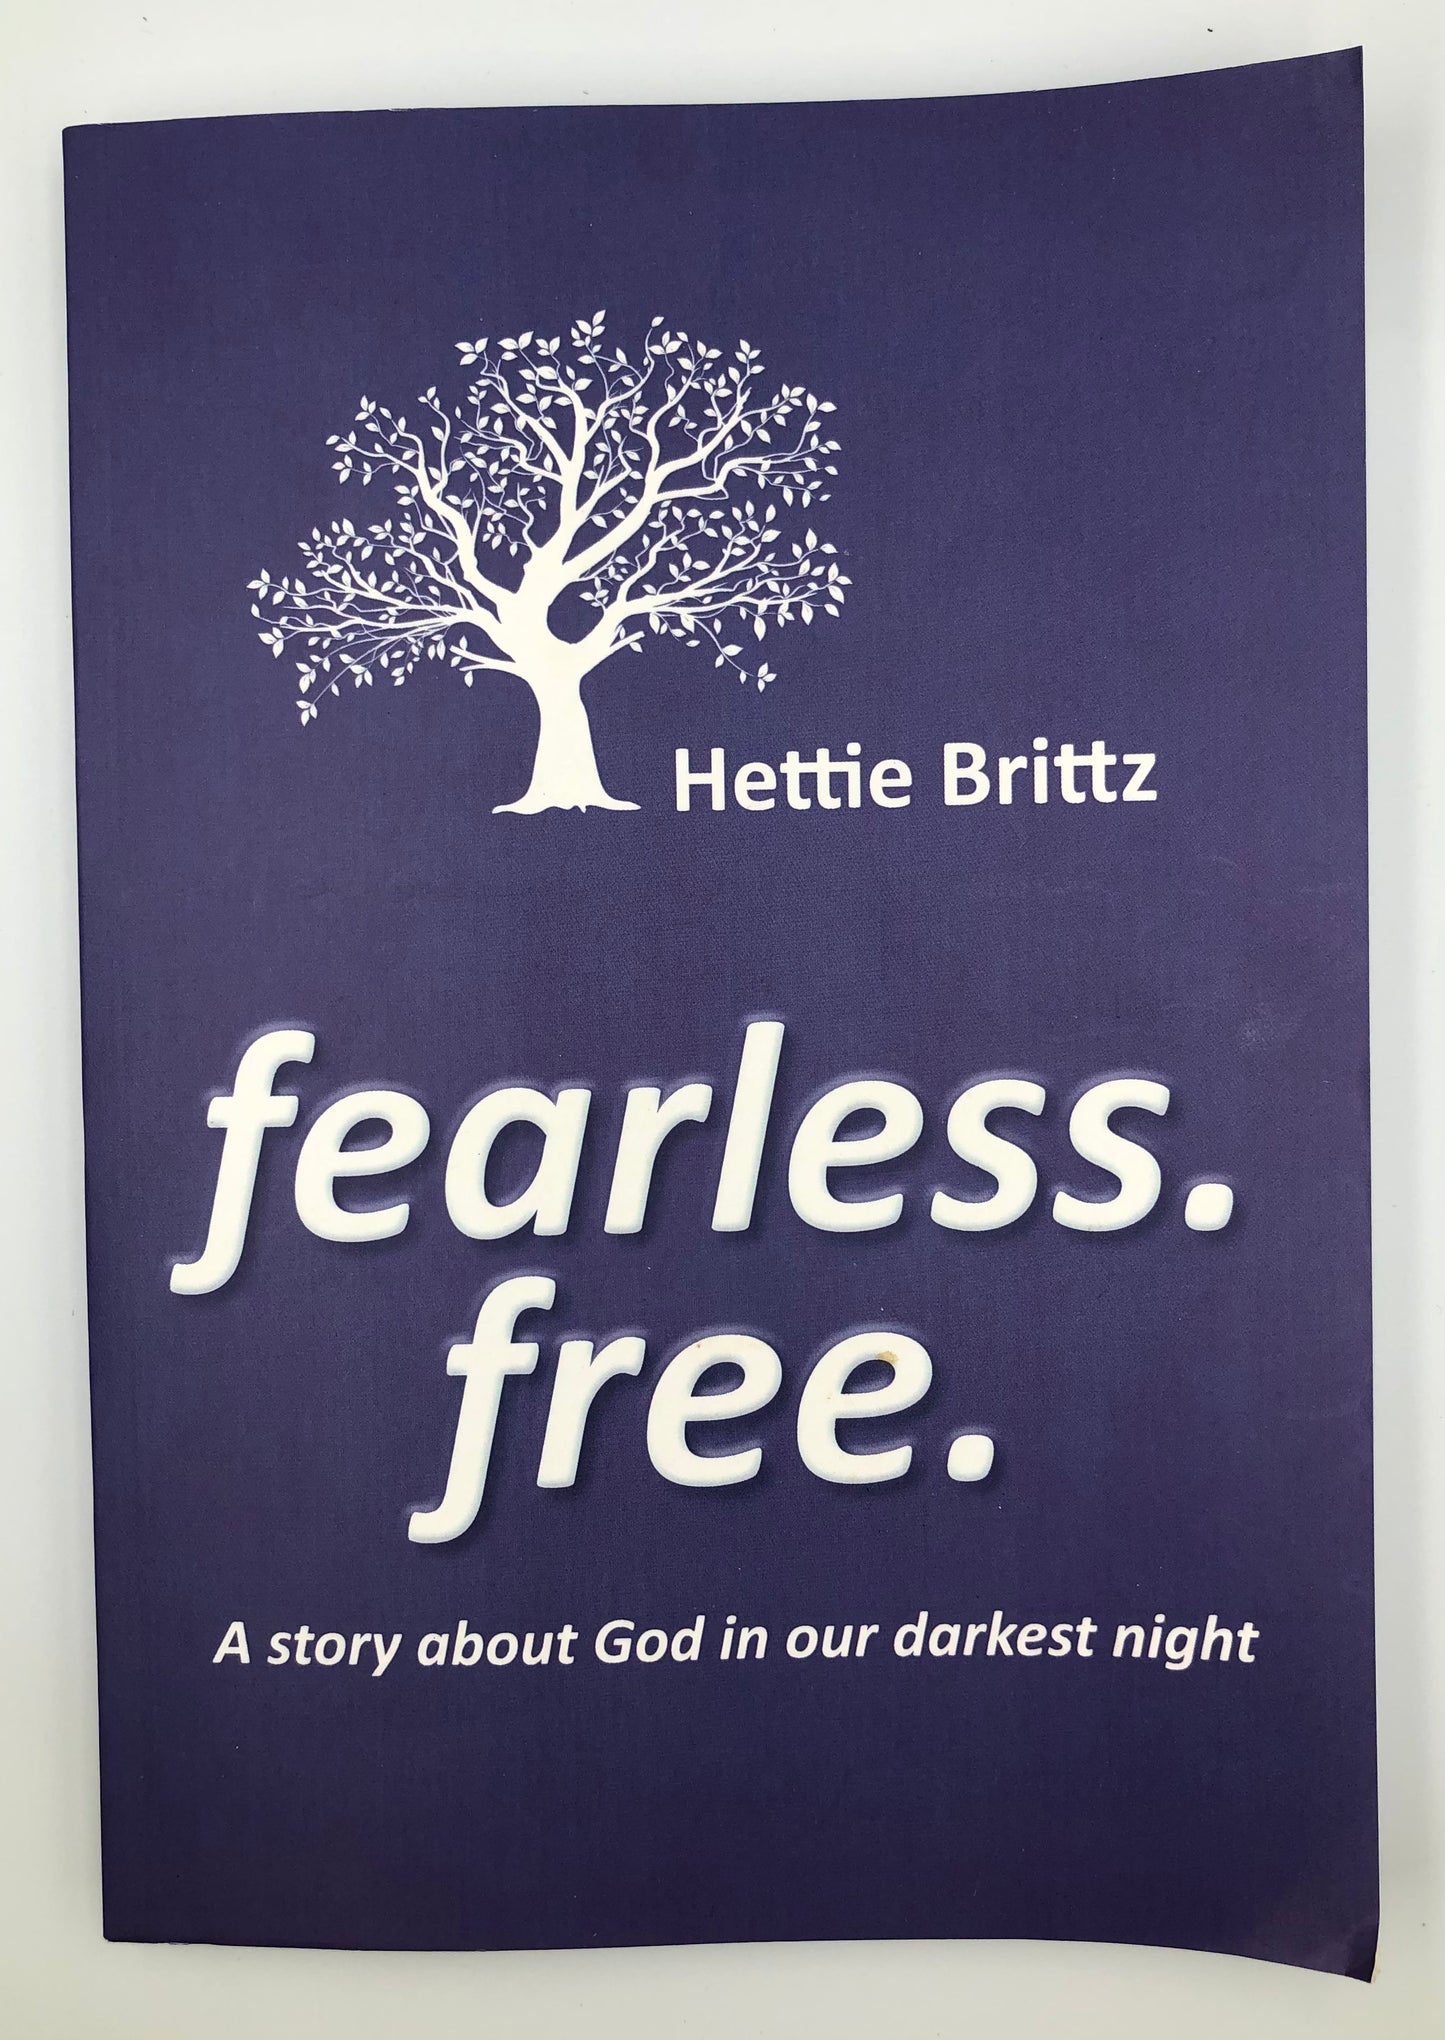 Brittz, Hettie - FEARLESS. FREE.